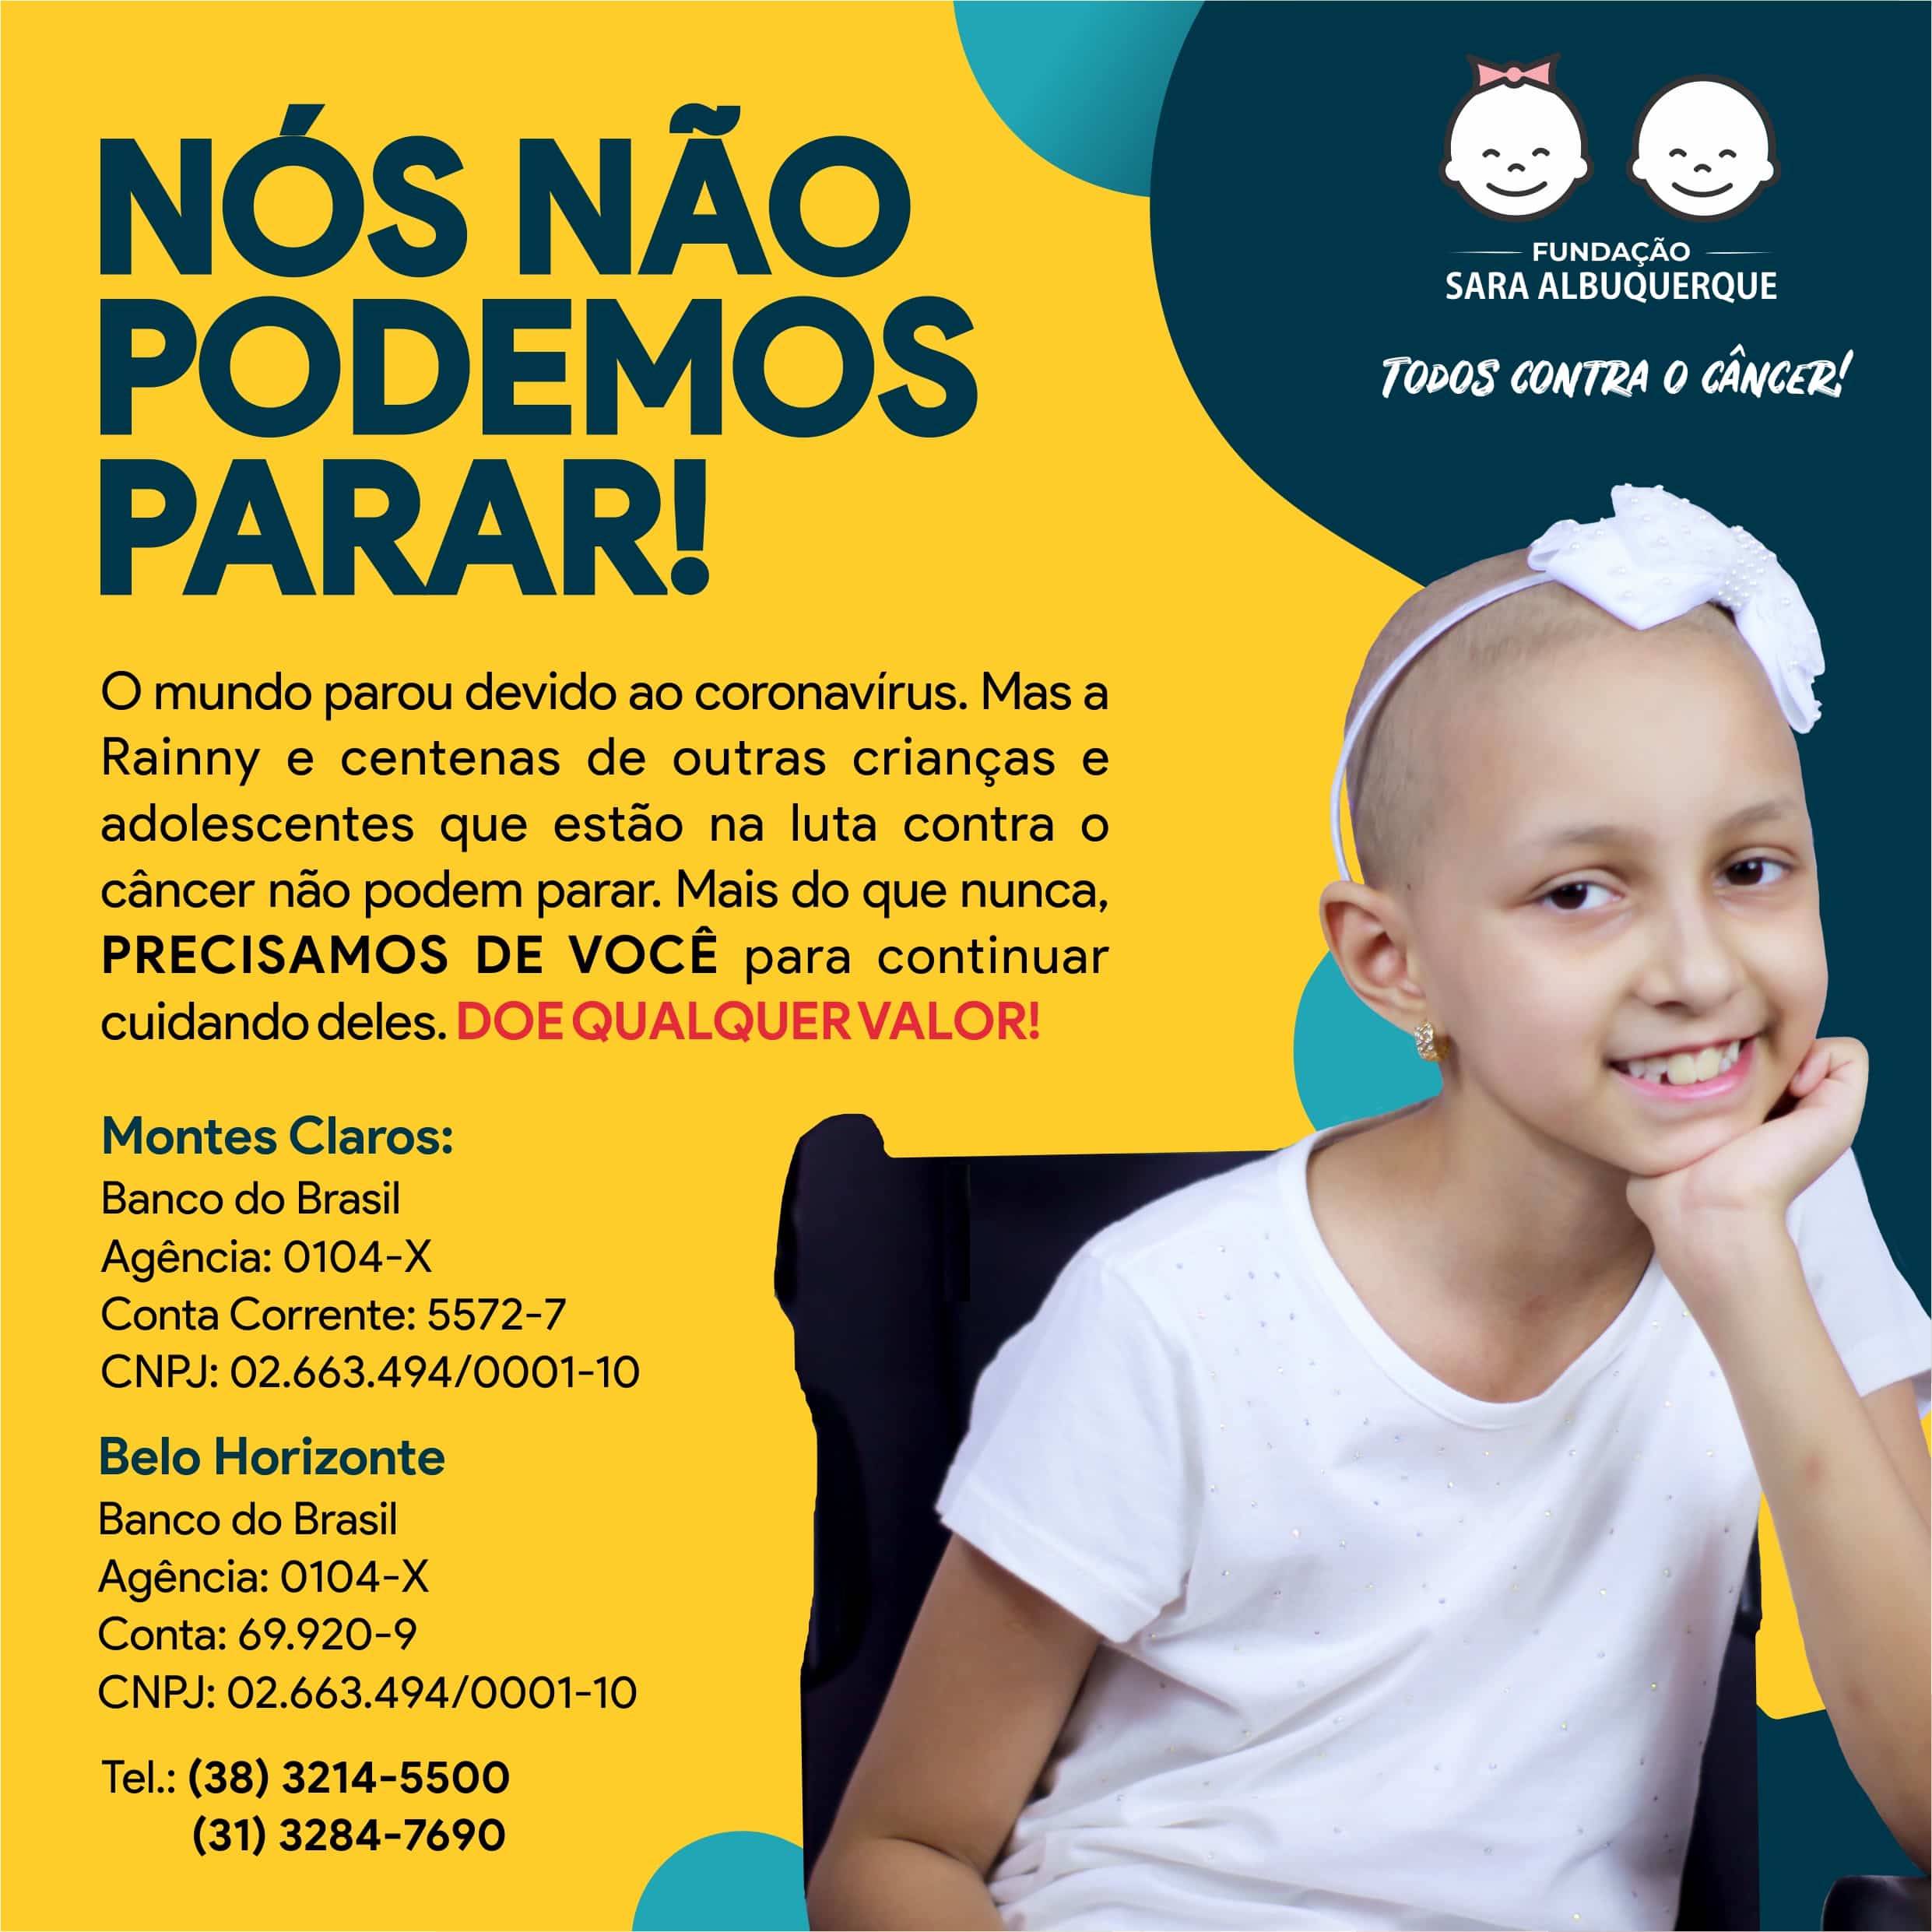 Norte de Minas - Fundação Sara lança campanha de doação: “Nós não podemos parar”